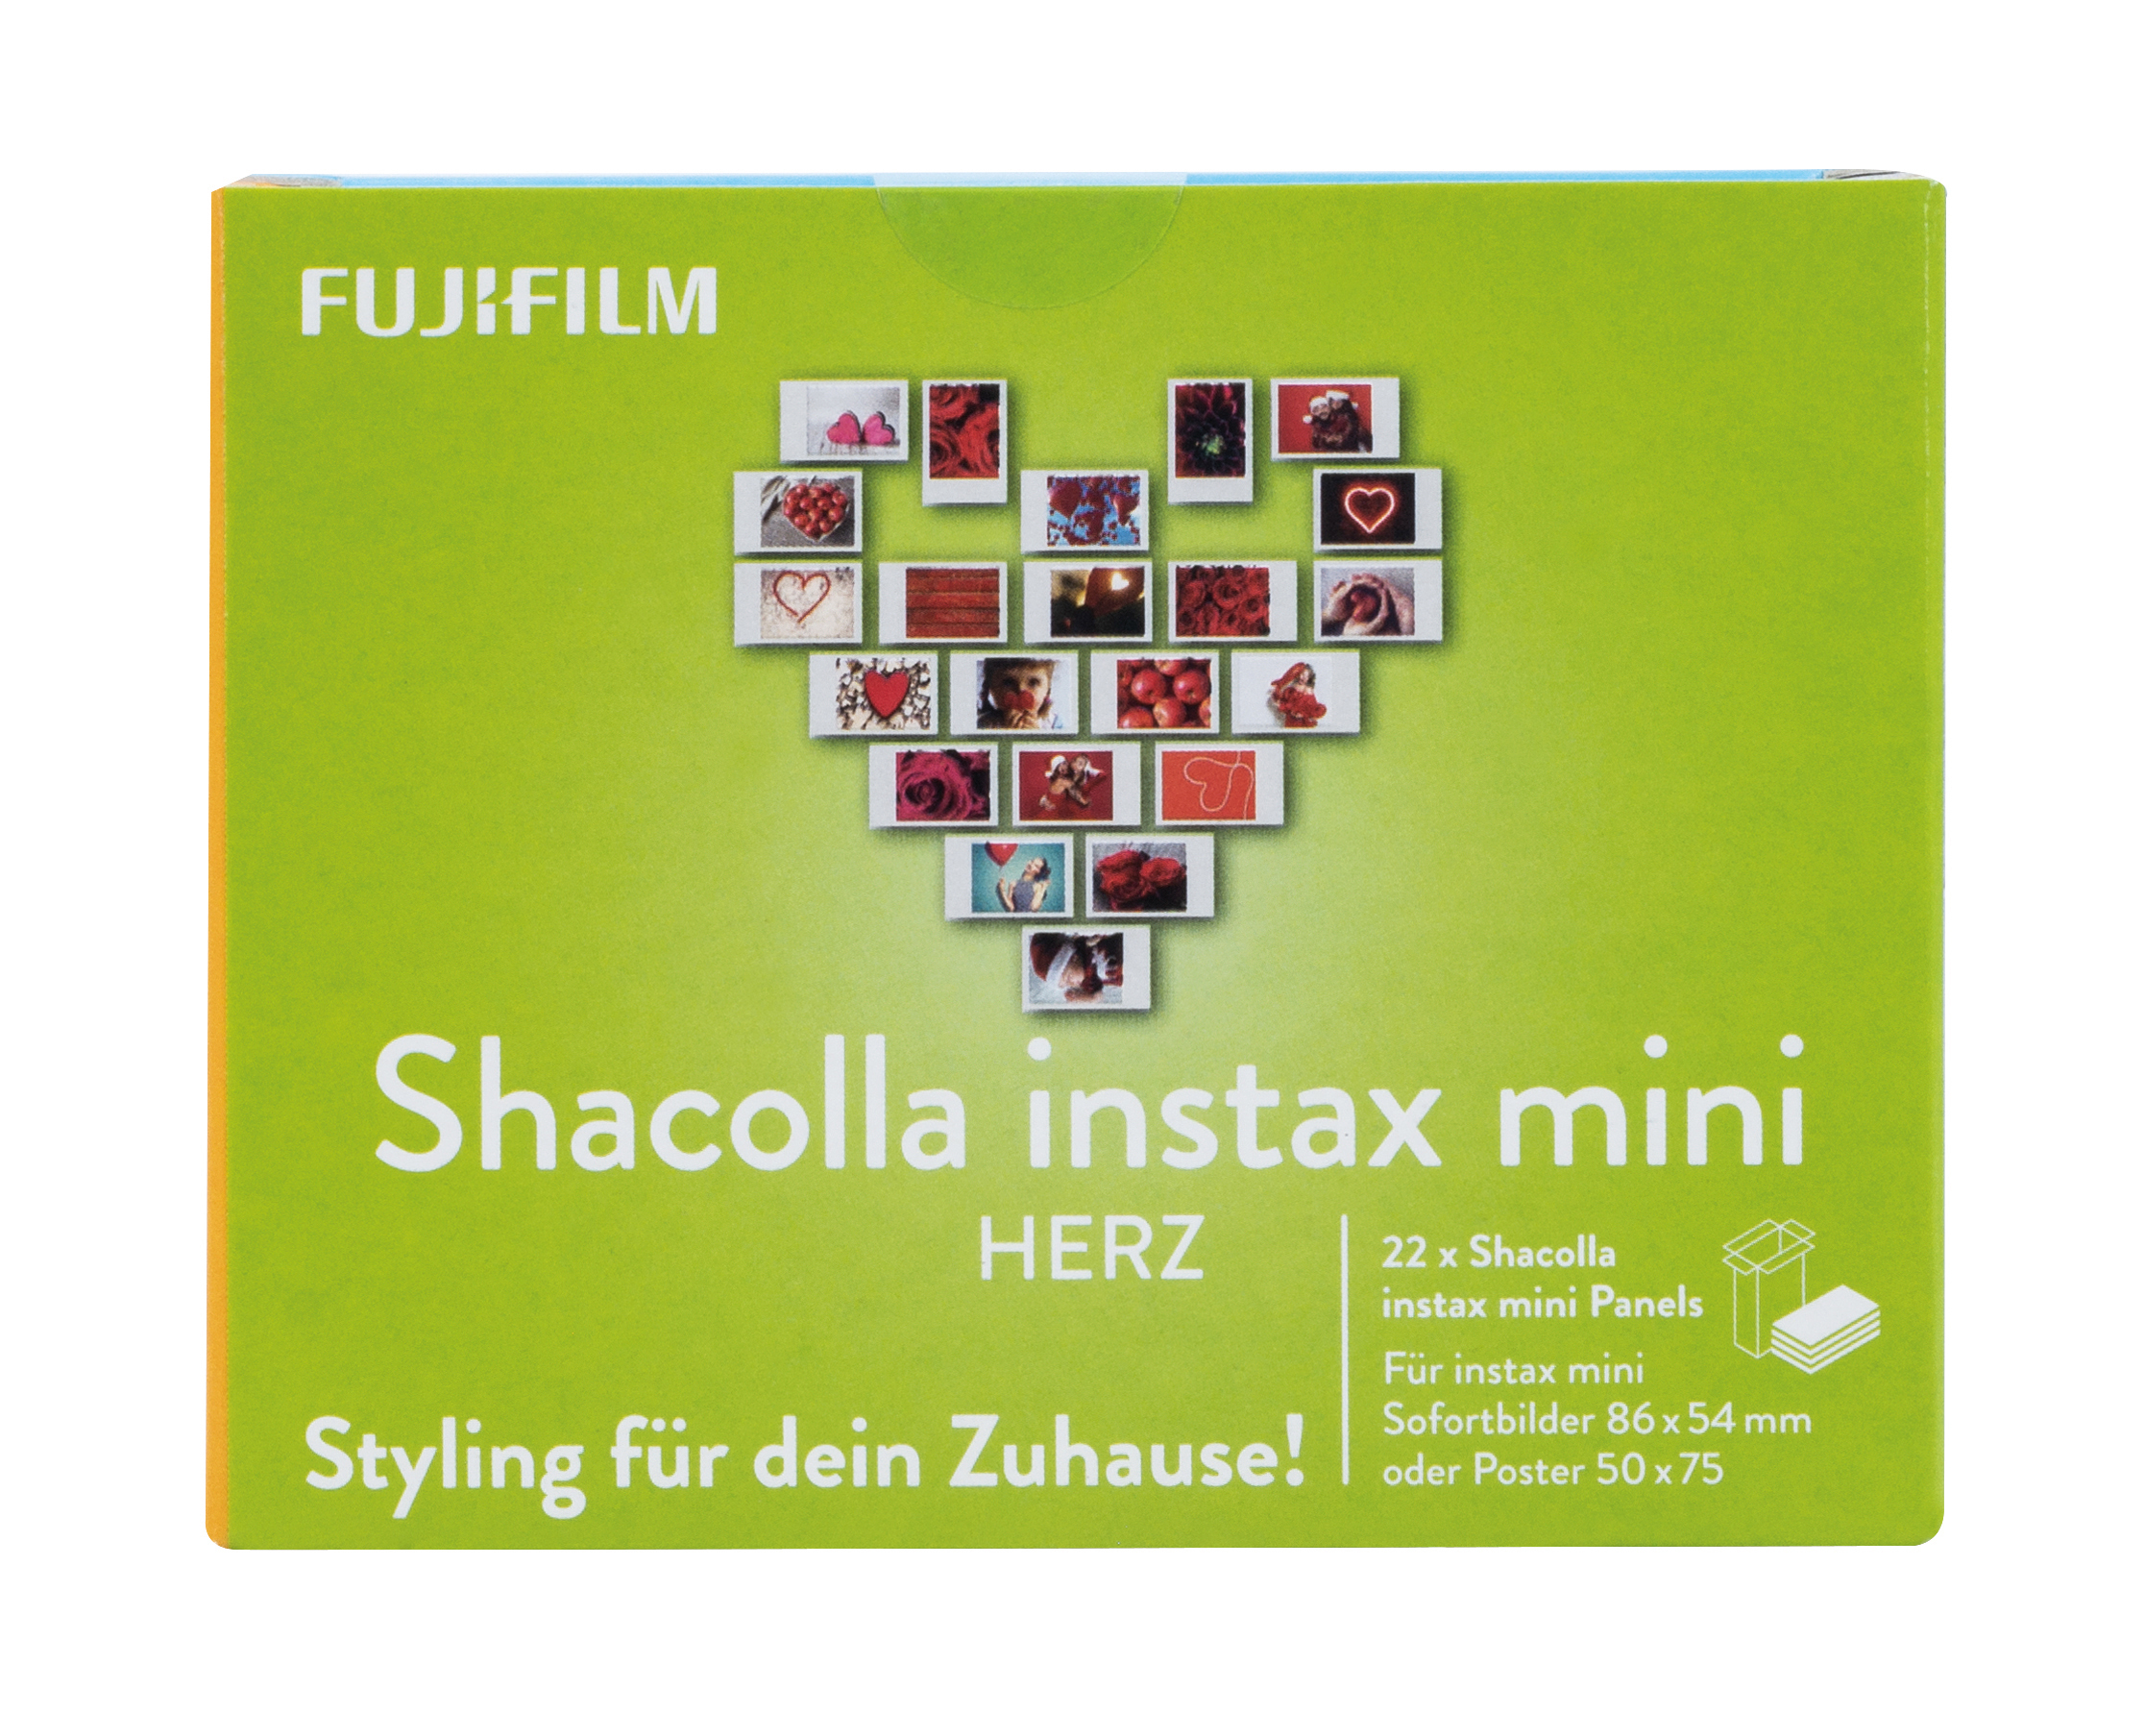 Shacolla mini Kamerataschen Herz FUJIFILM instax